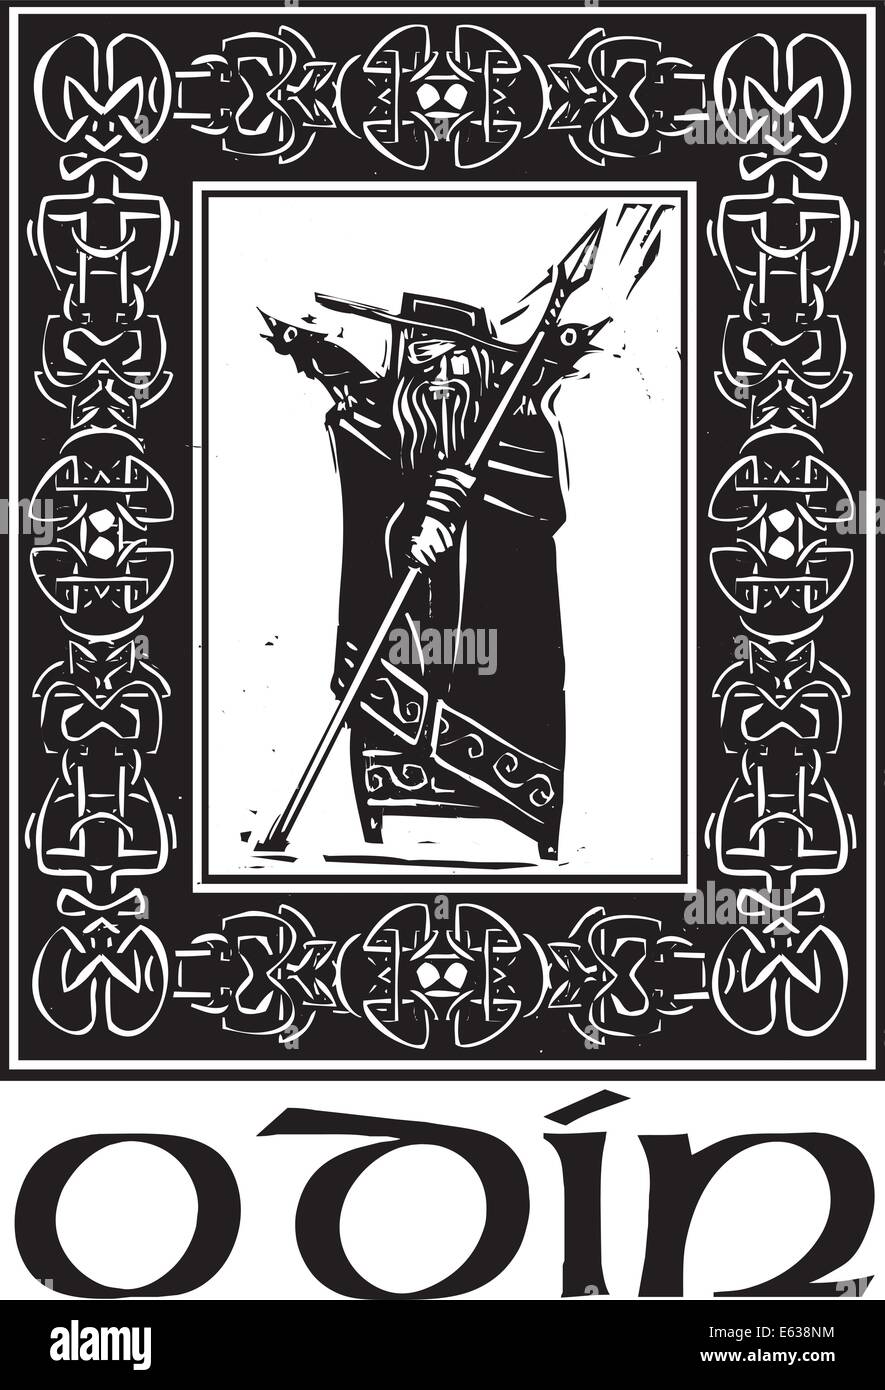 Holzschnitt-Stil Bild der Wikinger Gott Odin in einer keltischen Grenze. Stock Vektor